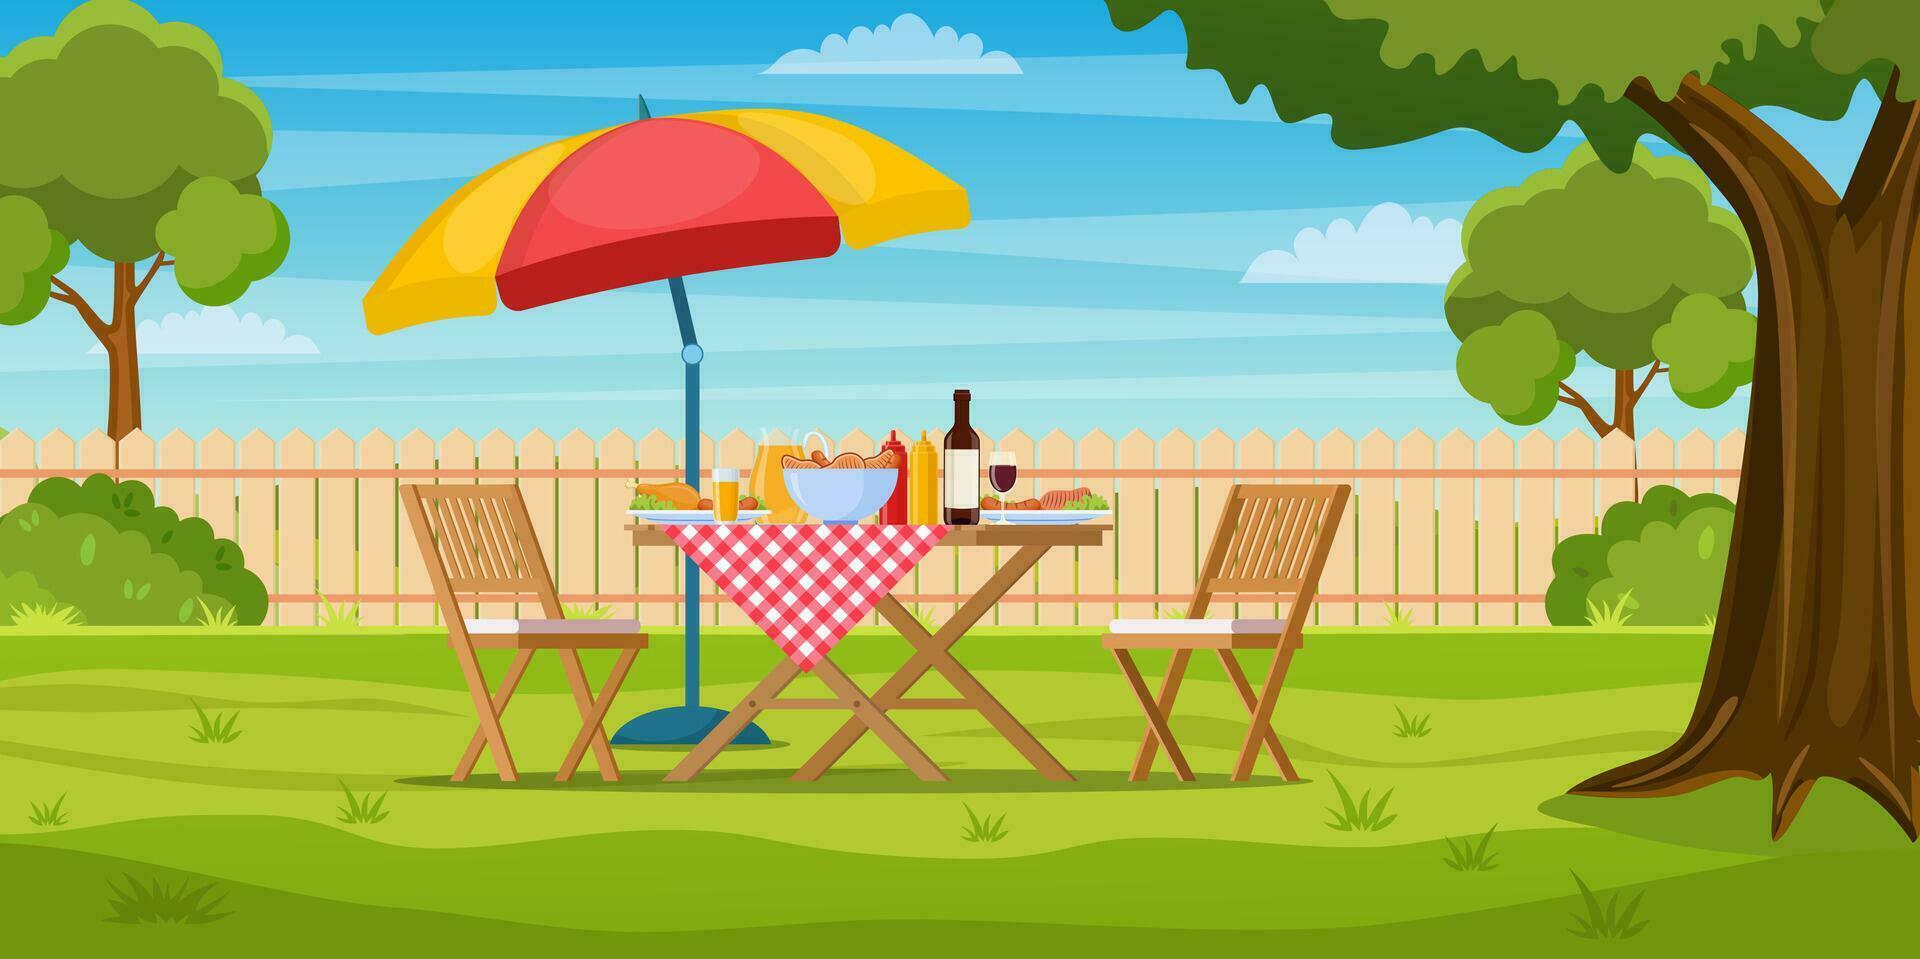 Grill Party im das Hinterhof mit Zaun, Bäume, Gebüsch. Picknick mit Grill auf Sommer- Rasen im Park oder Garten Essen auf Tisch, Stühle und Regenschirm. Vektor Illustration im eben Design